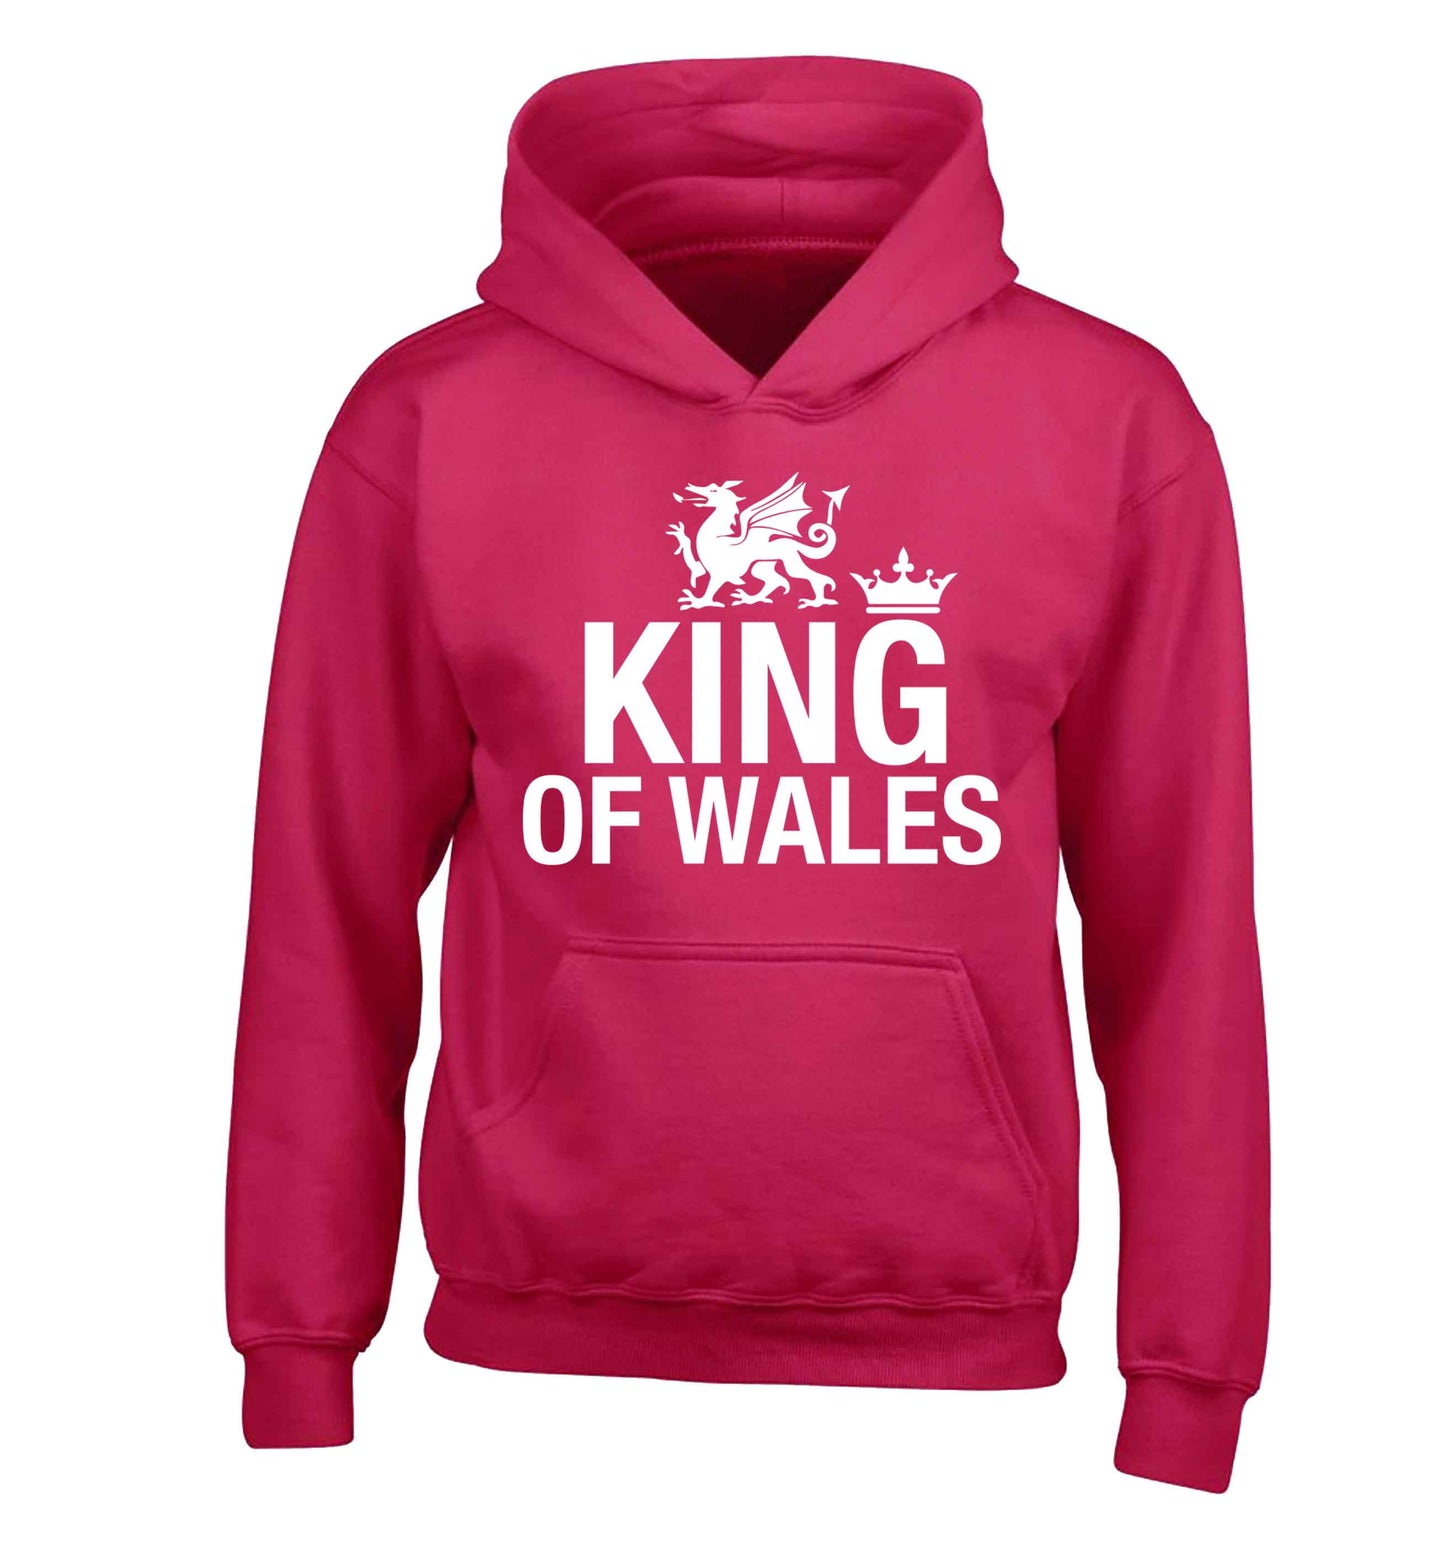 King of Wales children's pink hoodie 12-13 Years